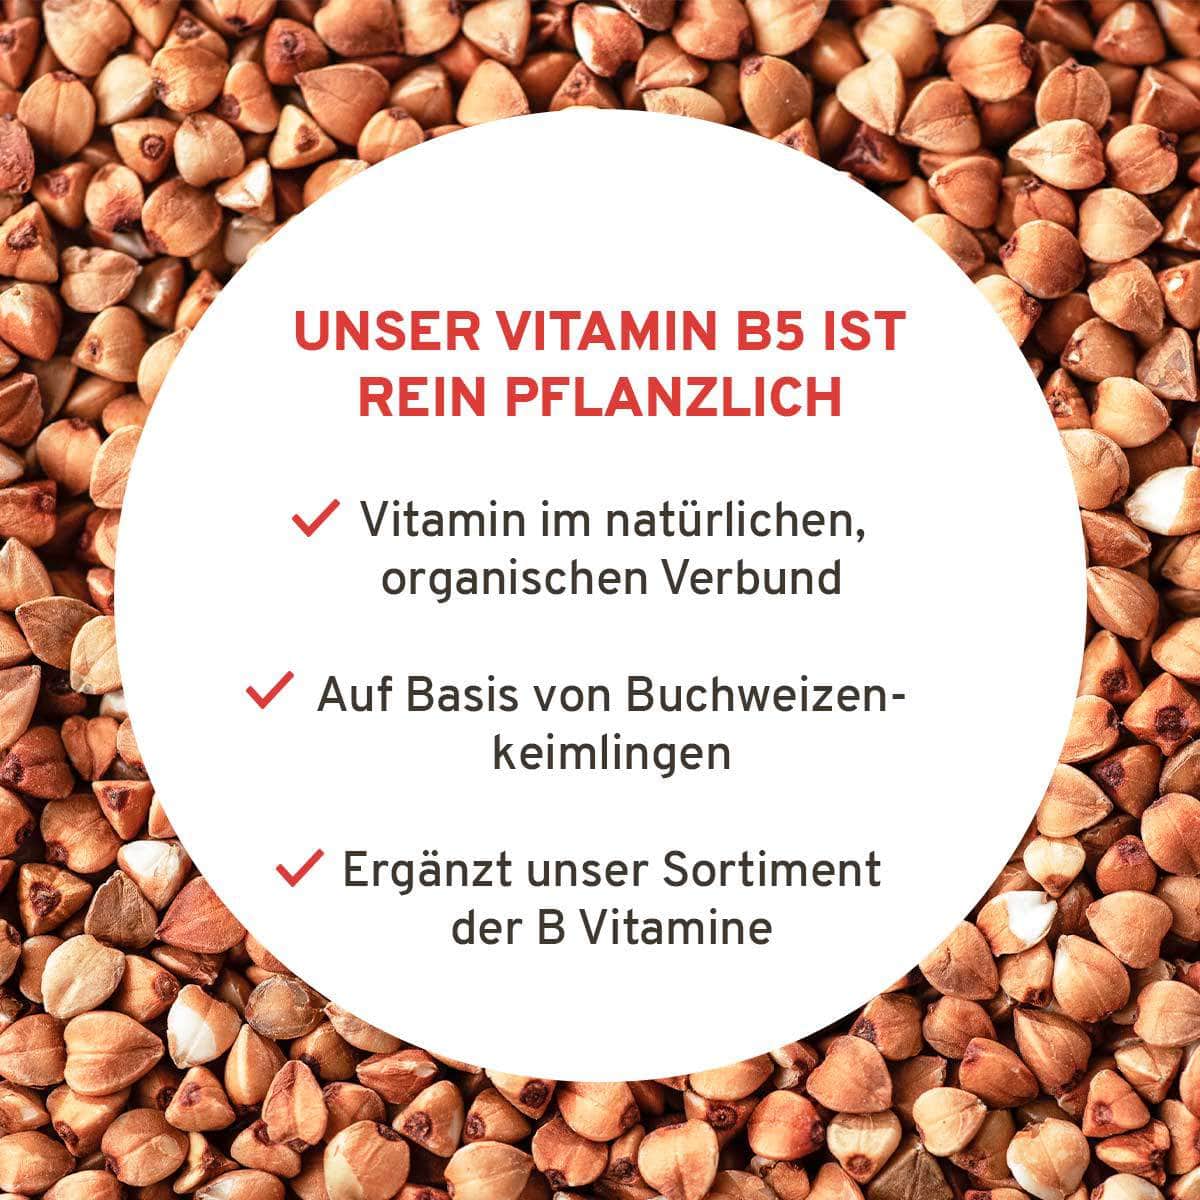 InnoNature Kapseln Vitamin B5 Kapseln: Buchweizenkeimlinge